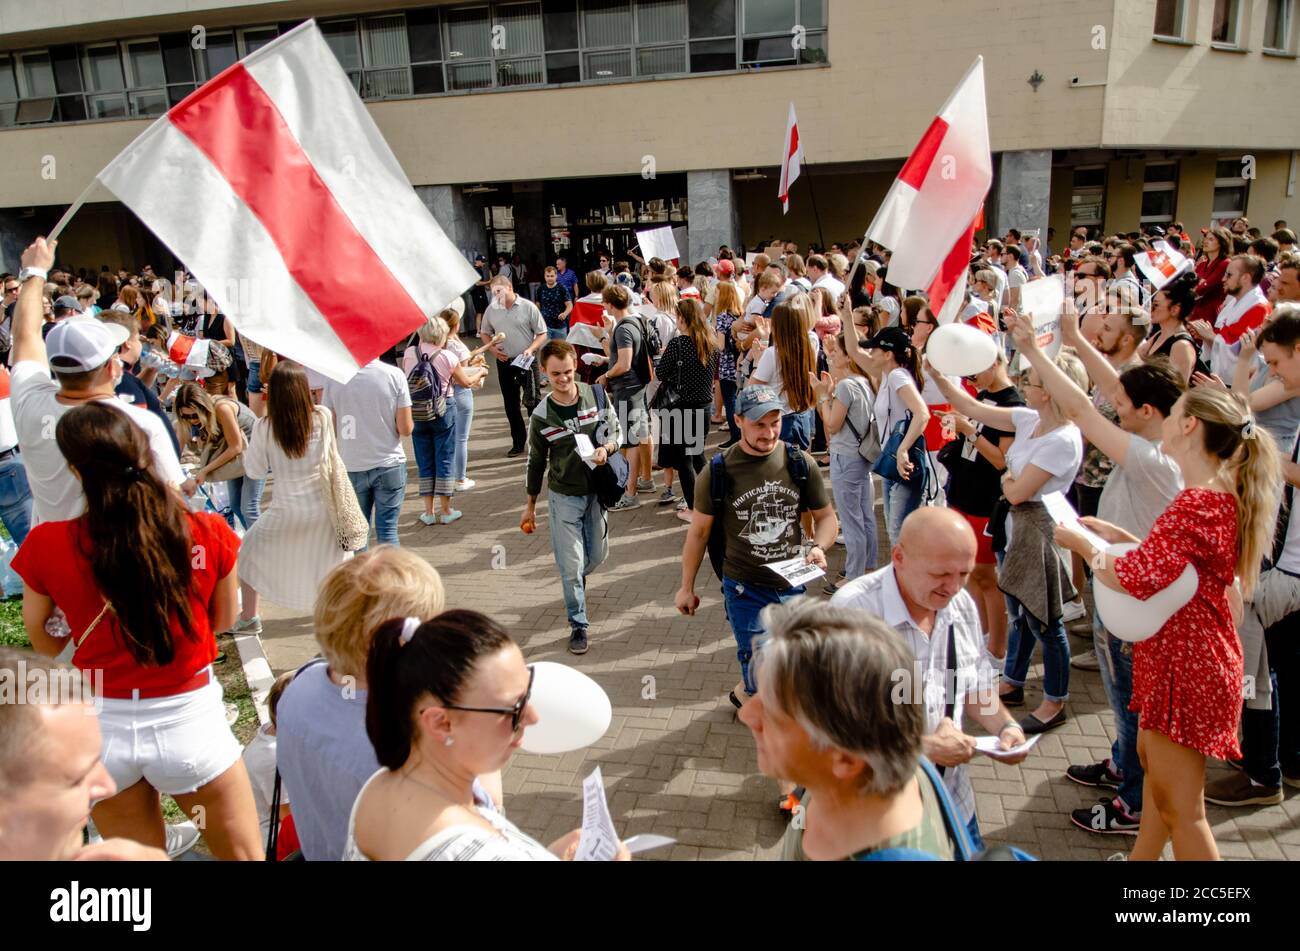 Minsk, Bielorrusia - 18 de agosto de 2020: Los manifestantes bielorrusos apoyan a los trabajadores de las fábricas dispuestos a ir a la huelga. Después de las elecciones presidenciales en Bielorrusia Foto de stock